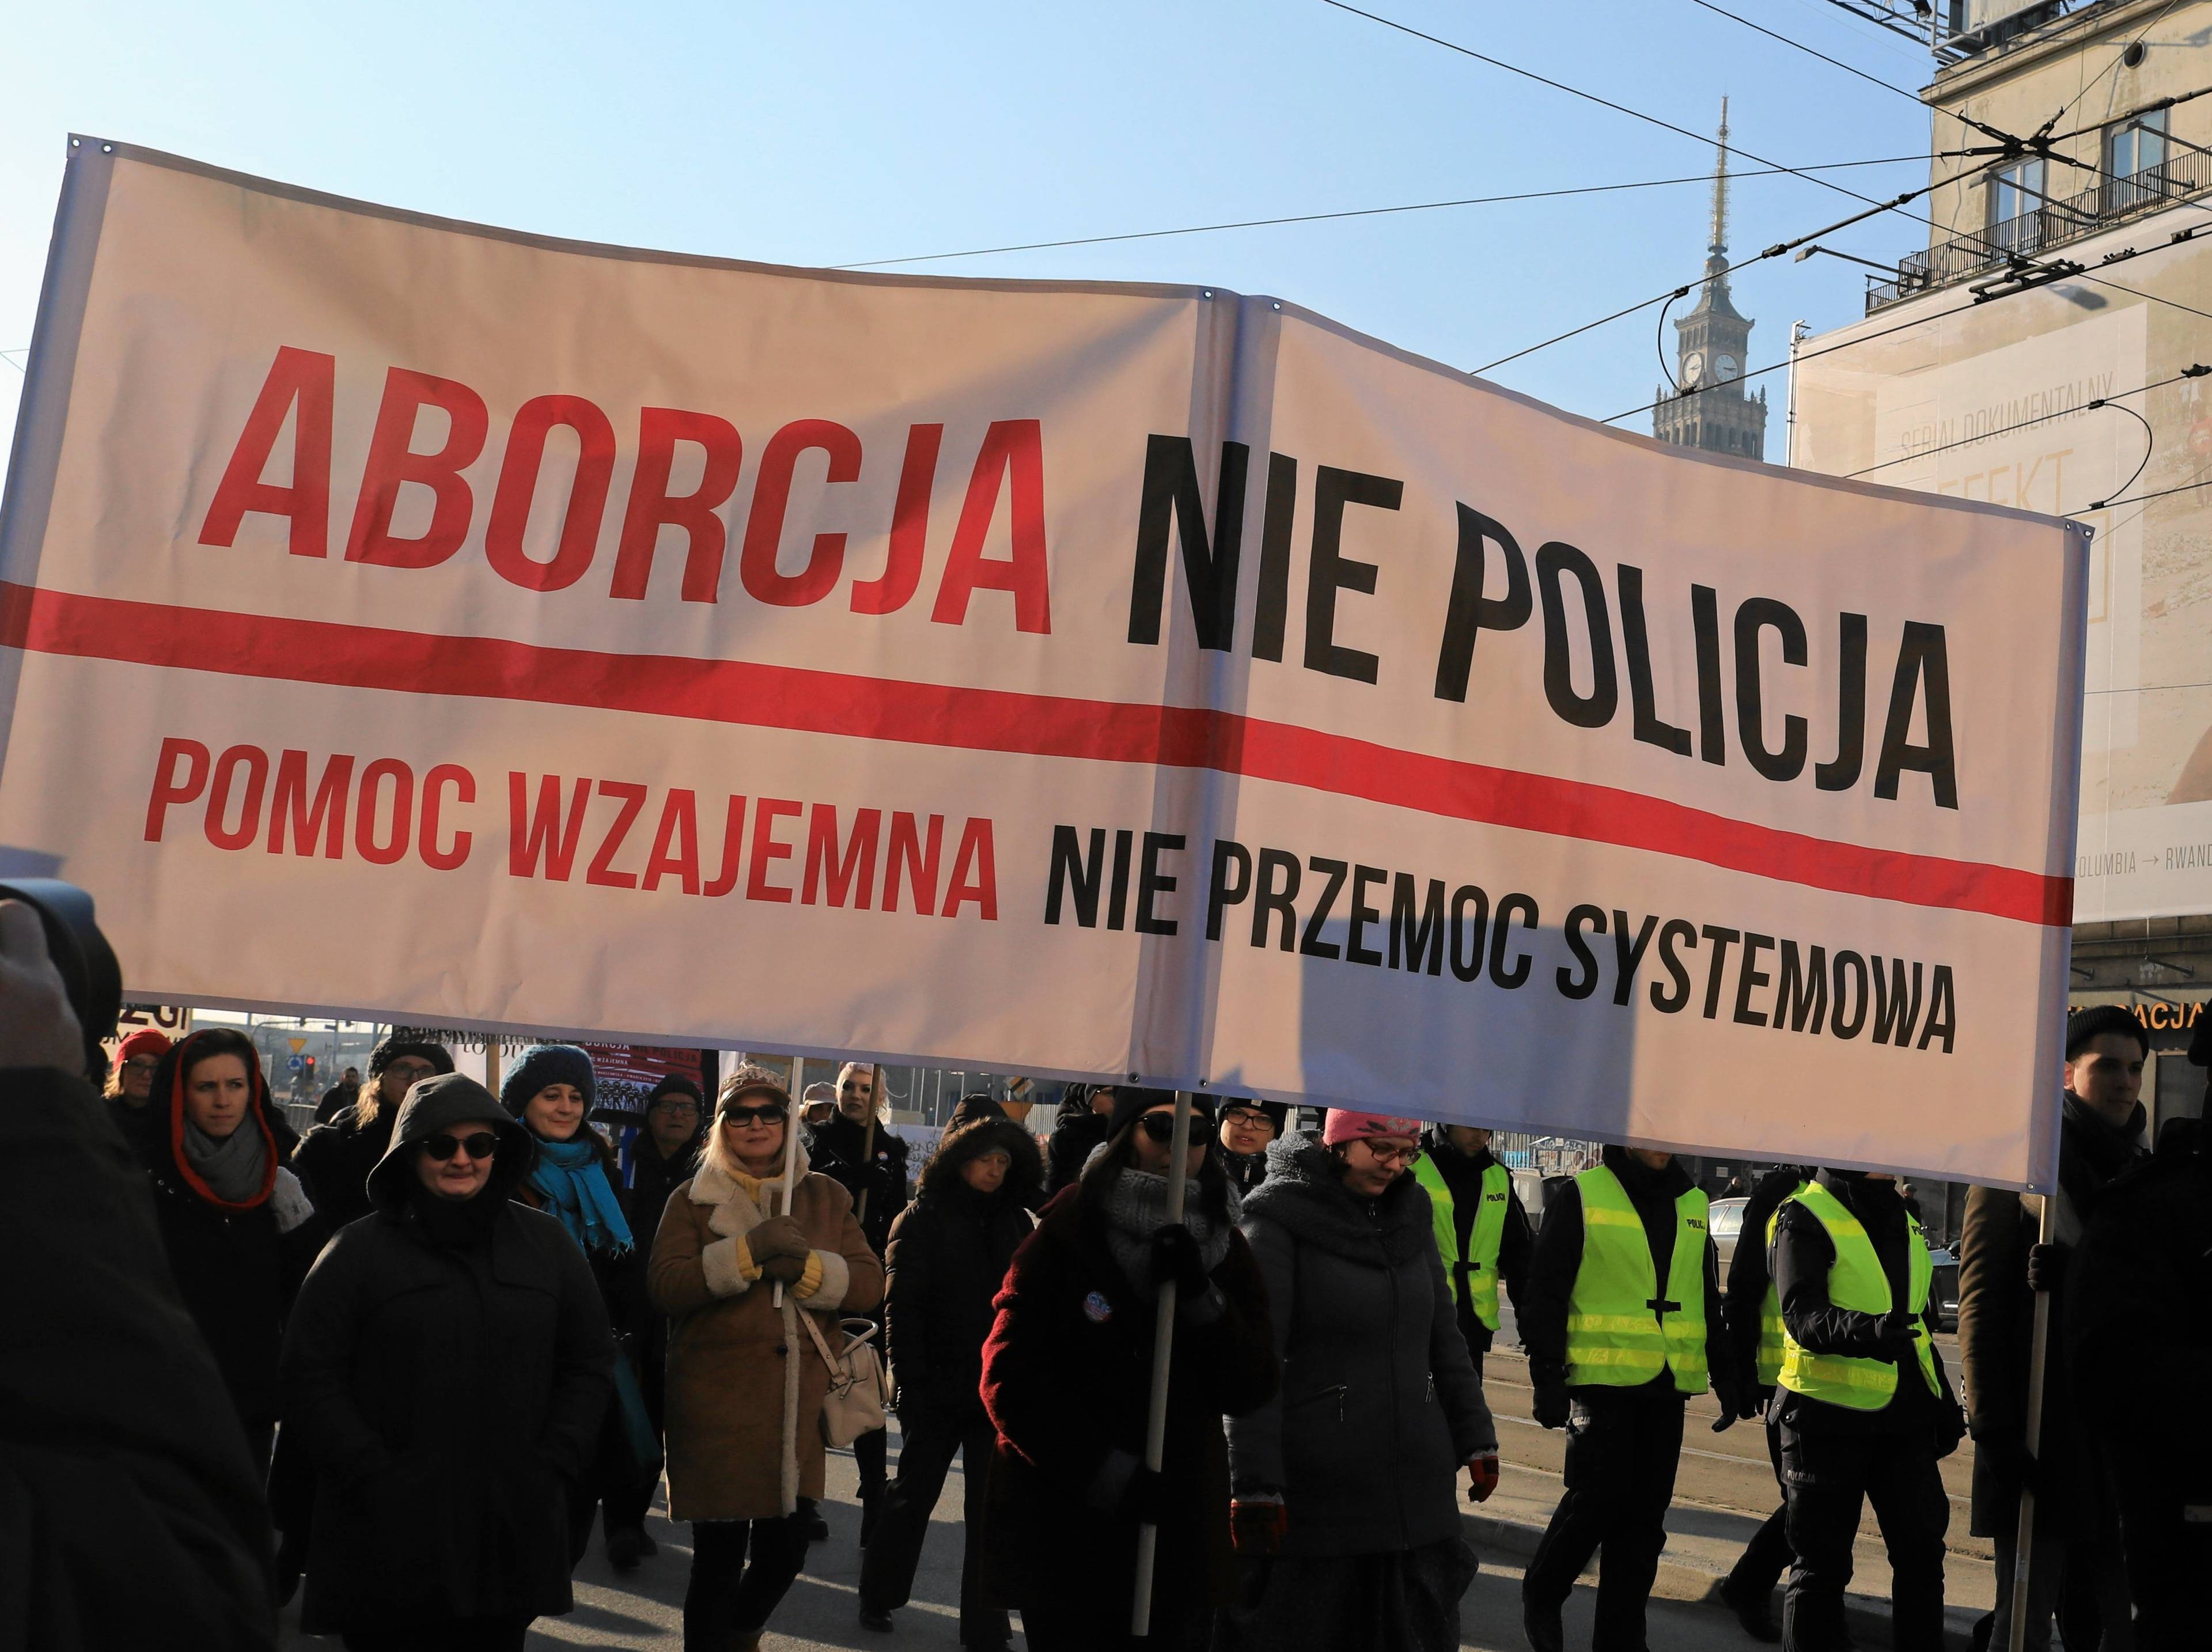 Aborcja nie policja - plakat z takim napisem niosą protestujące kobiety